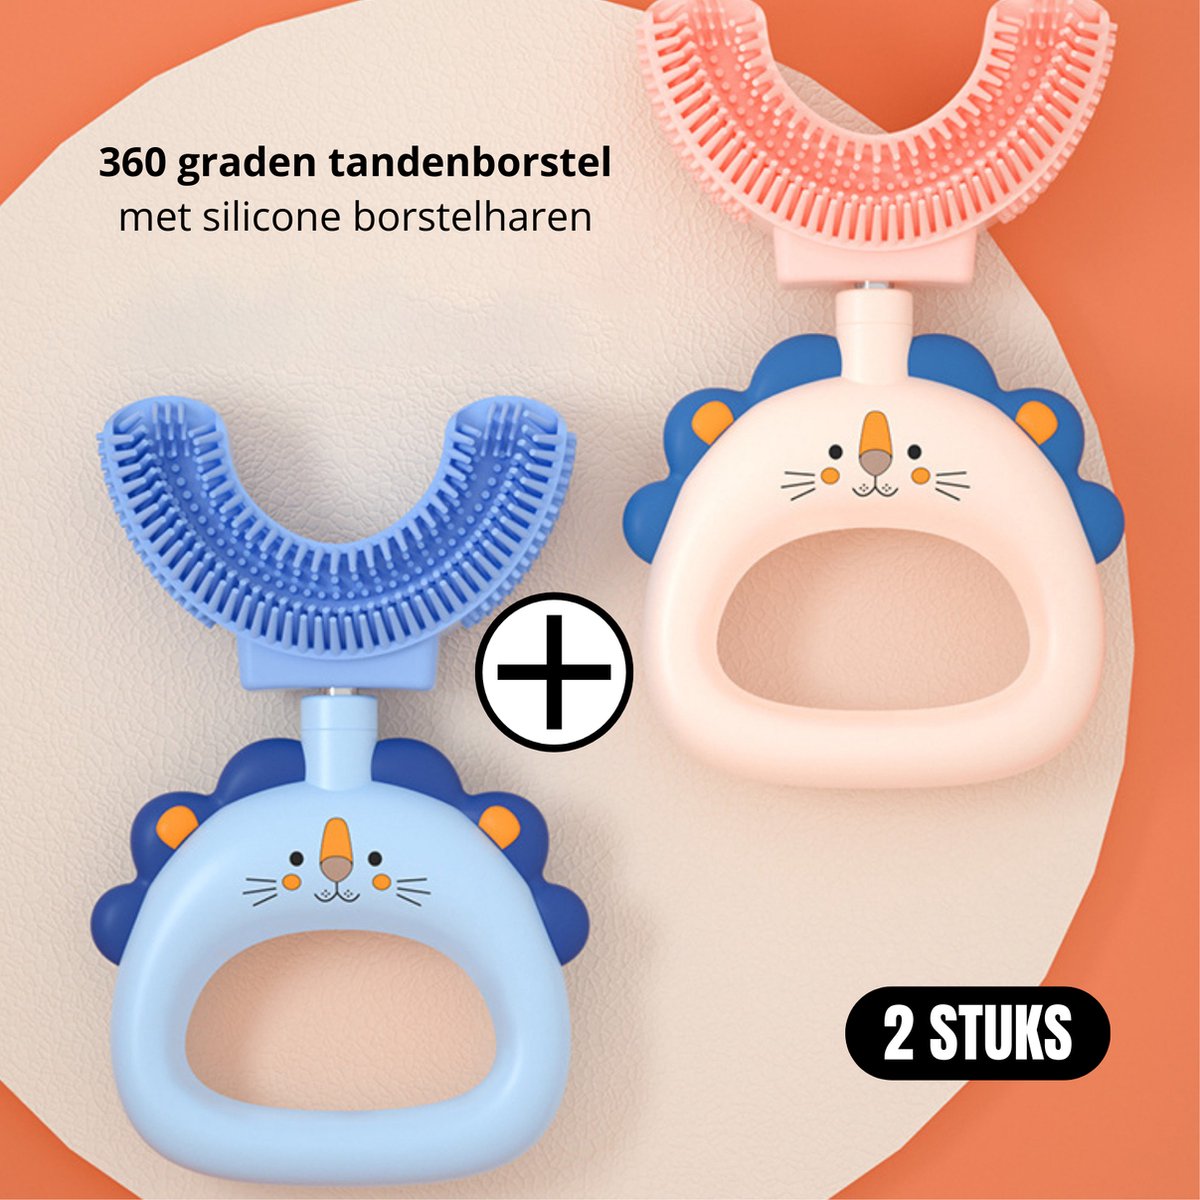 2 Stuks - 360 graden U vormige baby tandenborstel - Blauw Leeuw + Roze Leeuw - 2 in 1 Tandenborstel - Bijtring / Teether - Zachte siliconen - Kinderen tandenborstel - Jongen/Meisje